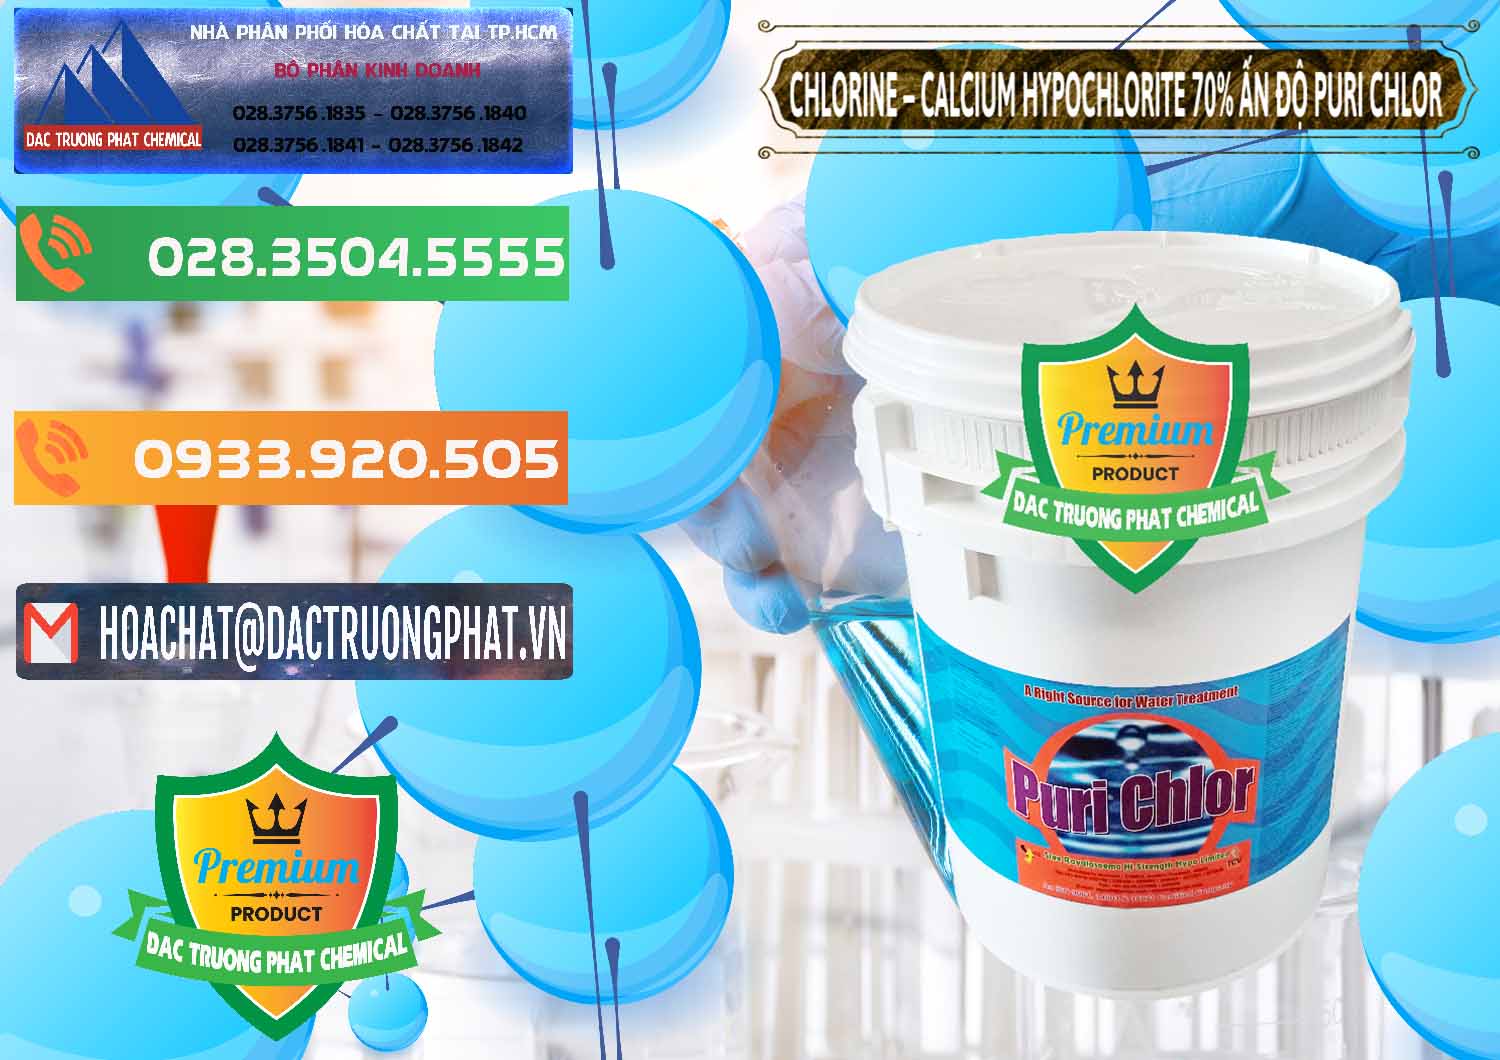 Công ty nhập khẩu _ bán Chlorine – Clorin 70% Puri Chlo Ấn Độ India - 0123 - Chuyên nhập khẩu & cung cấp hóa chất tại TP.HCM - hoachatxulynuoc.com.vn